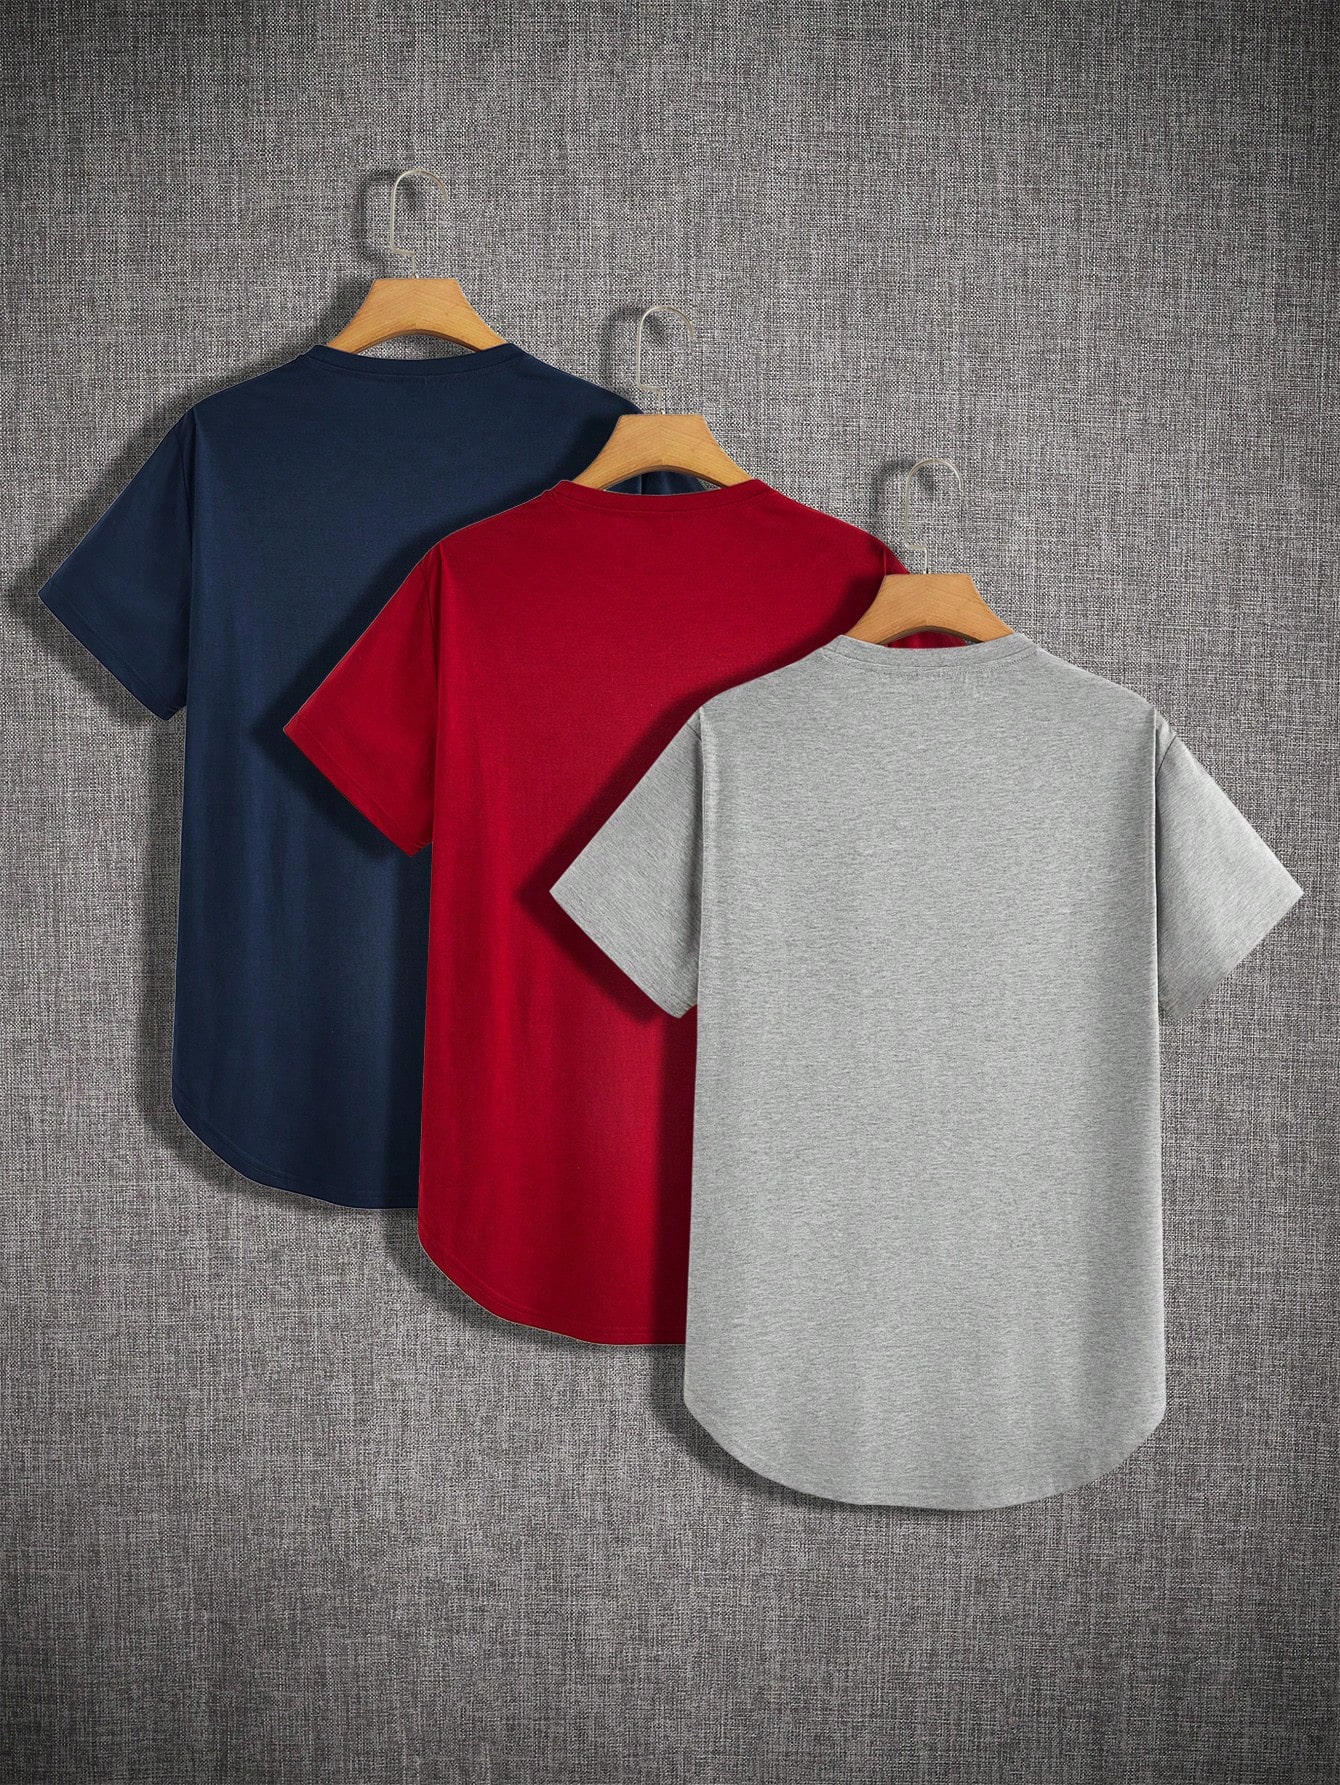 Мужские однотонные футболки с короткими рукавами Manfinity Basics, 3 шт., темно-синий